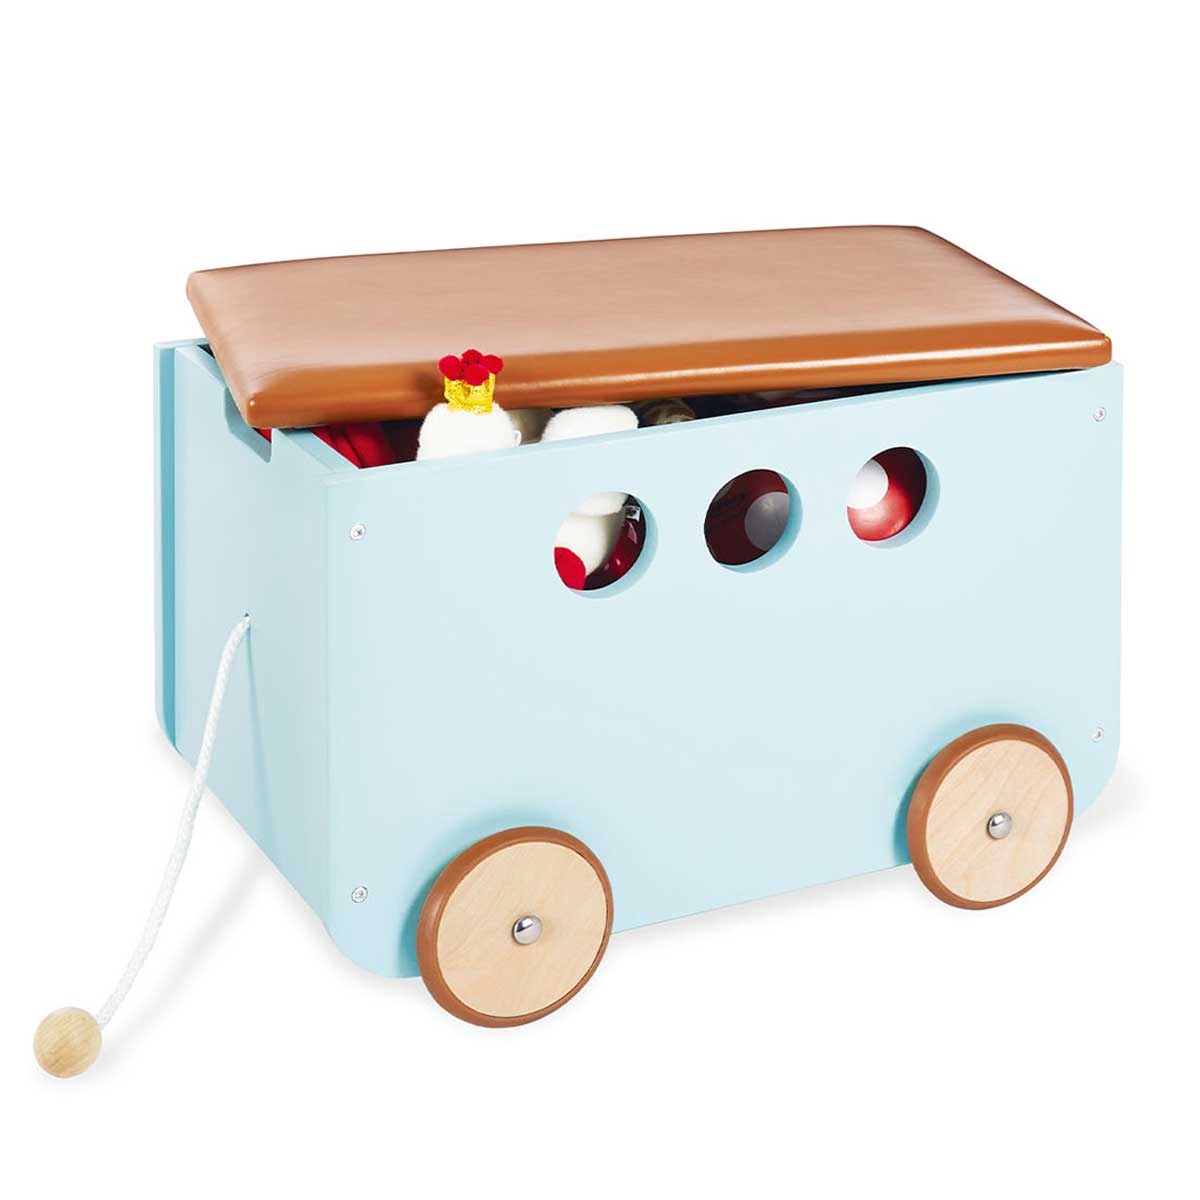 Drvena kutija za igračke na kotačima Pinolino Jim mint 3